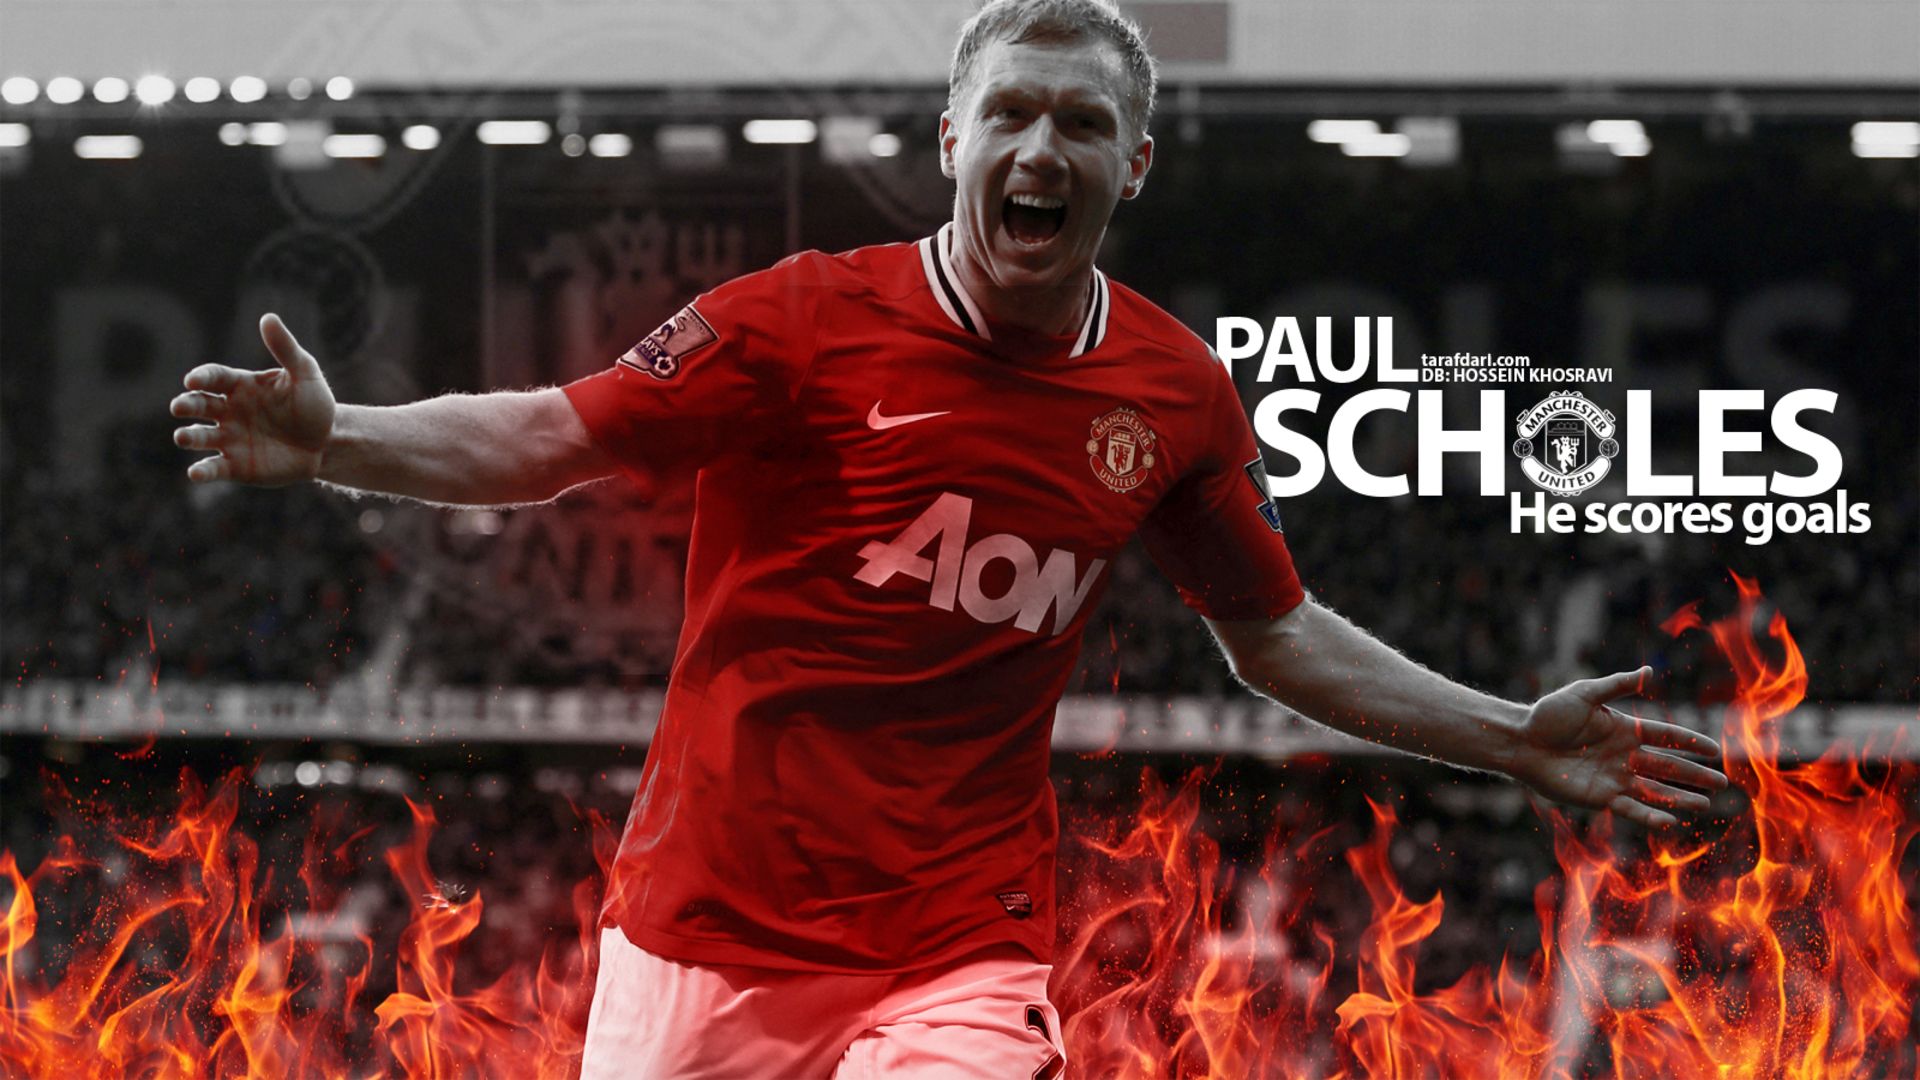 Paul sport. Paul Scholes Manchester United. Скоулз Манчестер Юнайтед. Манчестер Юнайтед фон. Пол Скоулз обои.